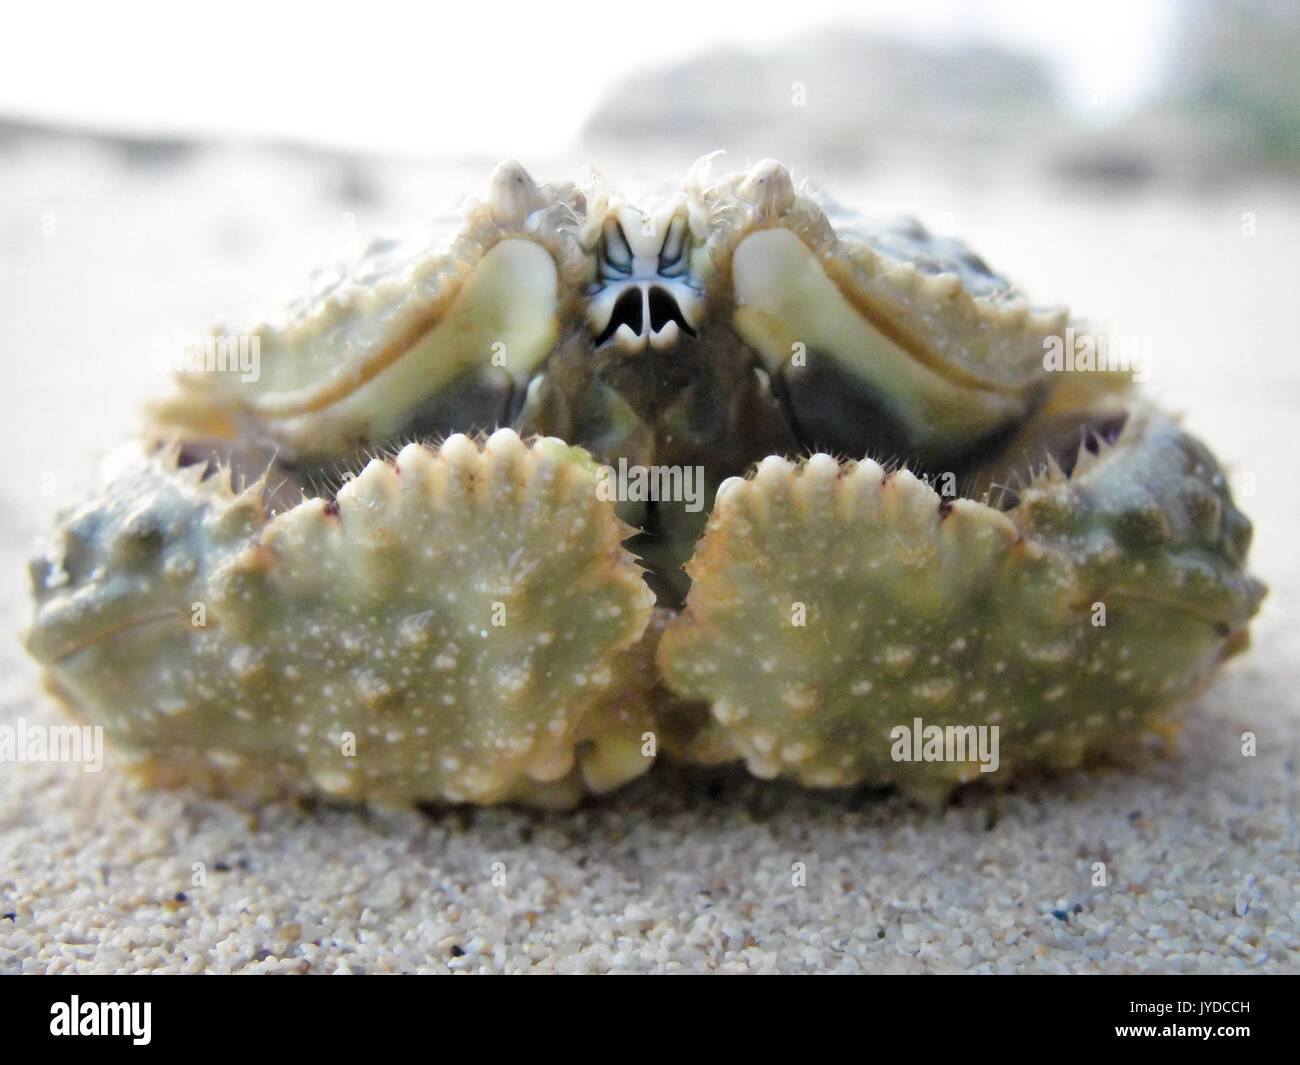 Box crab close-up Stock Photo